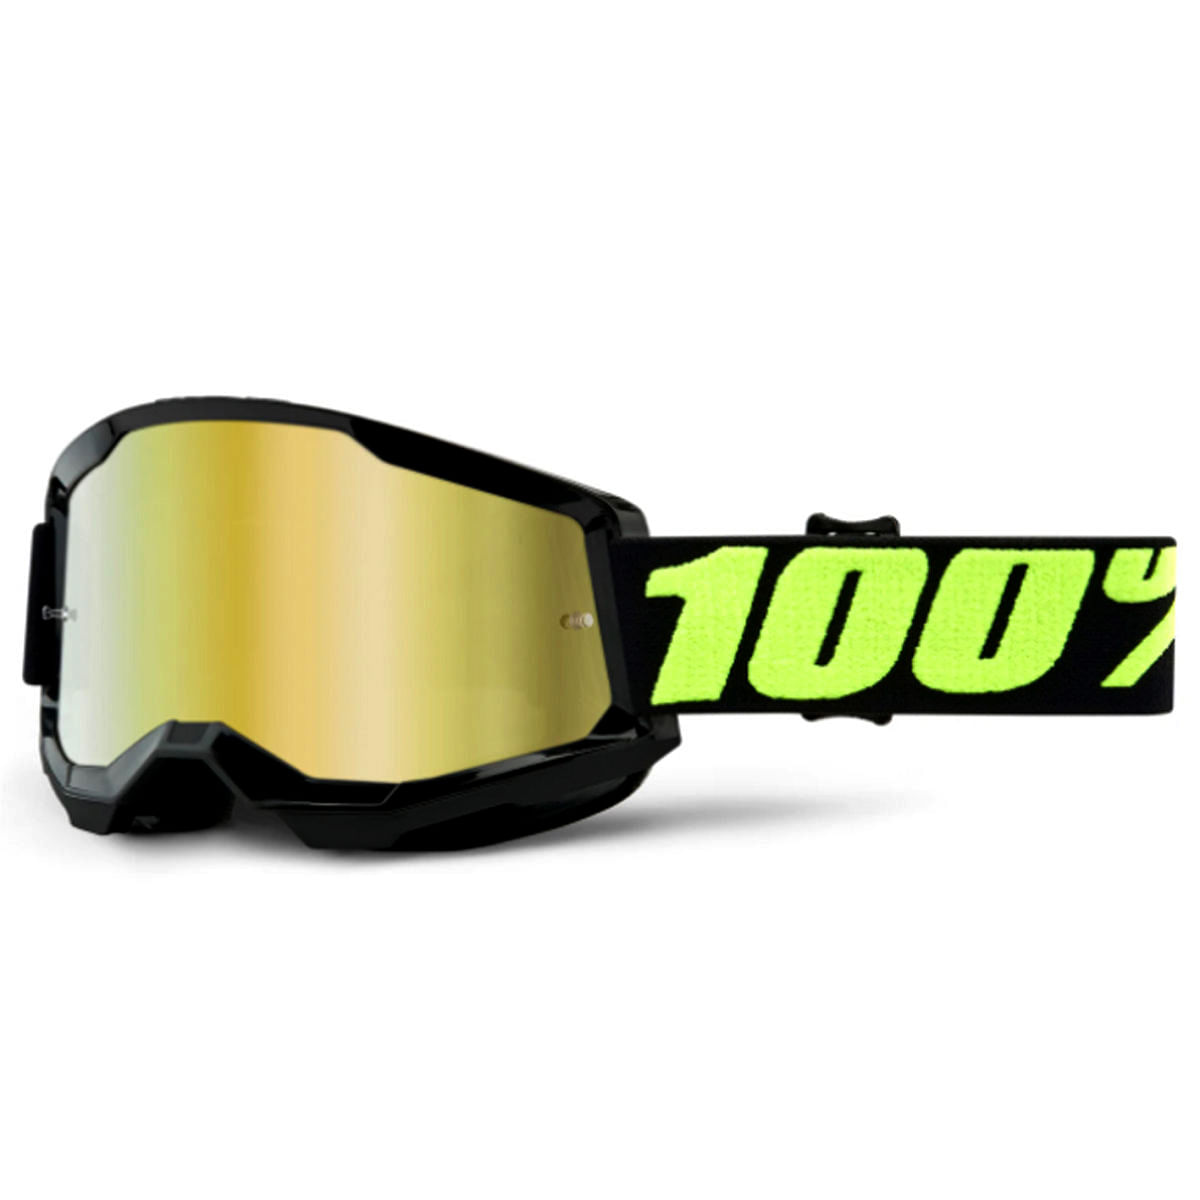 Oculos-Goggle-100--Strata-2-Preto-com-Lente-Dourada-Espelhada---10845--2-